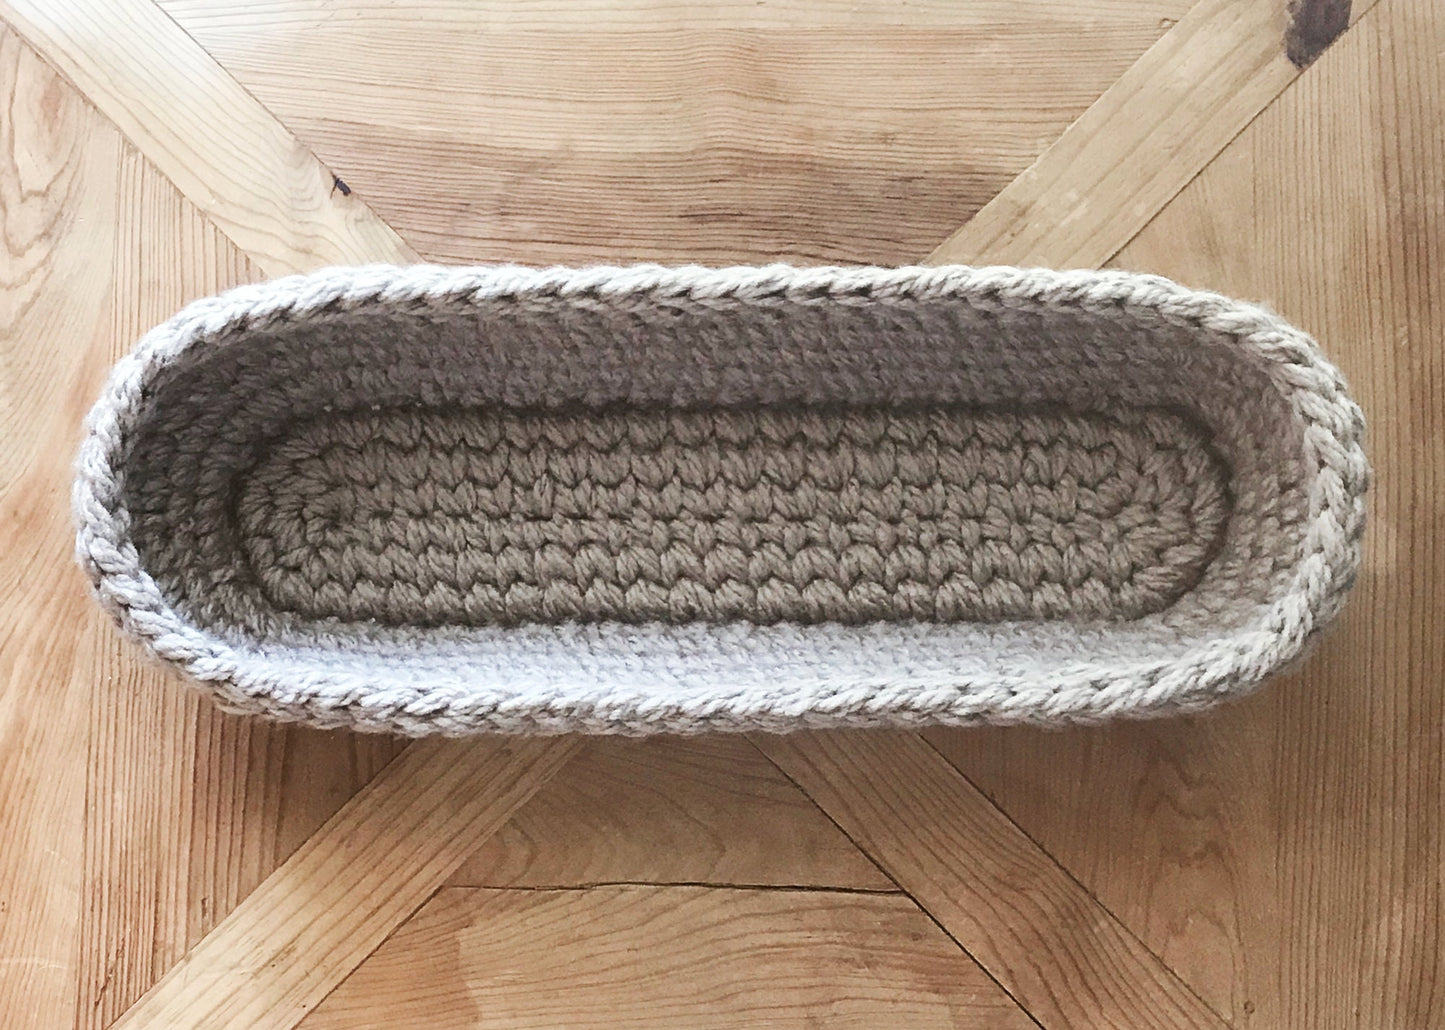 Dough Bowl with Pumpkins | Crochet Pattern